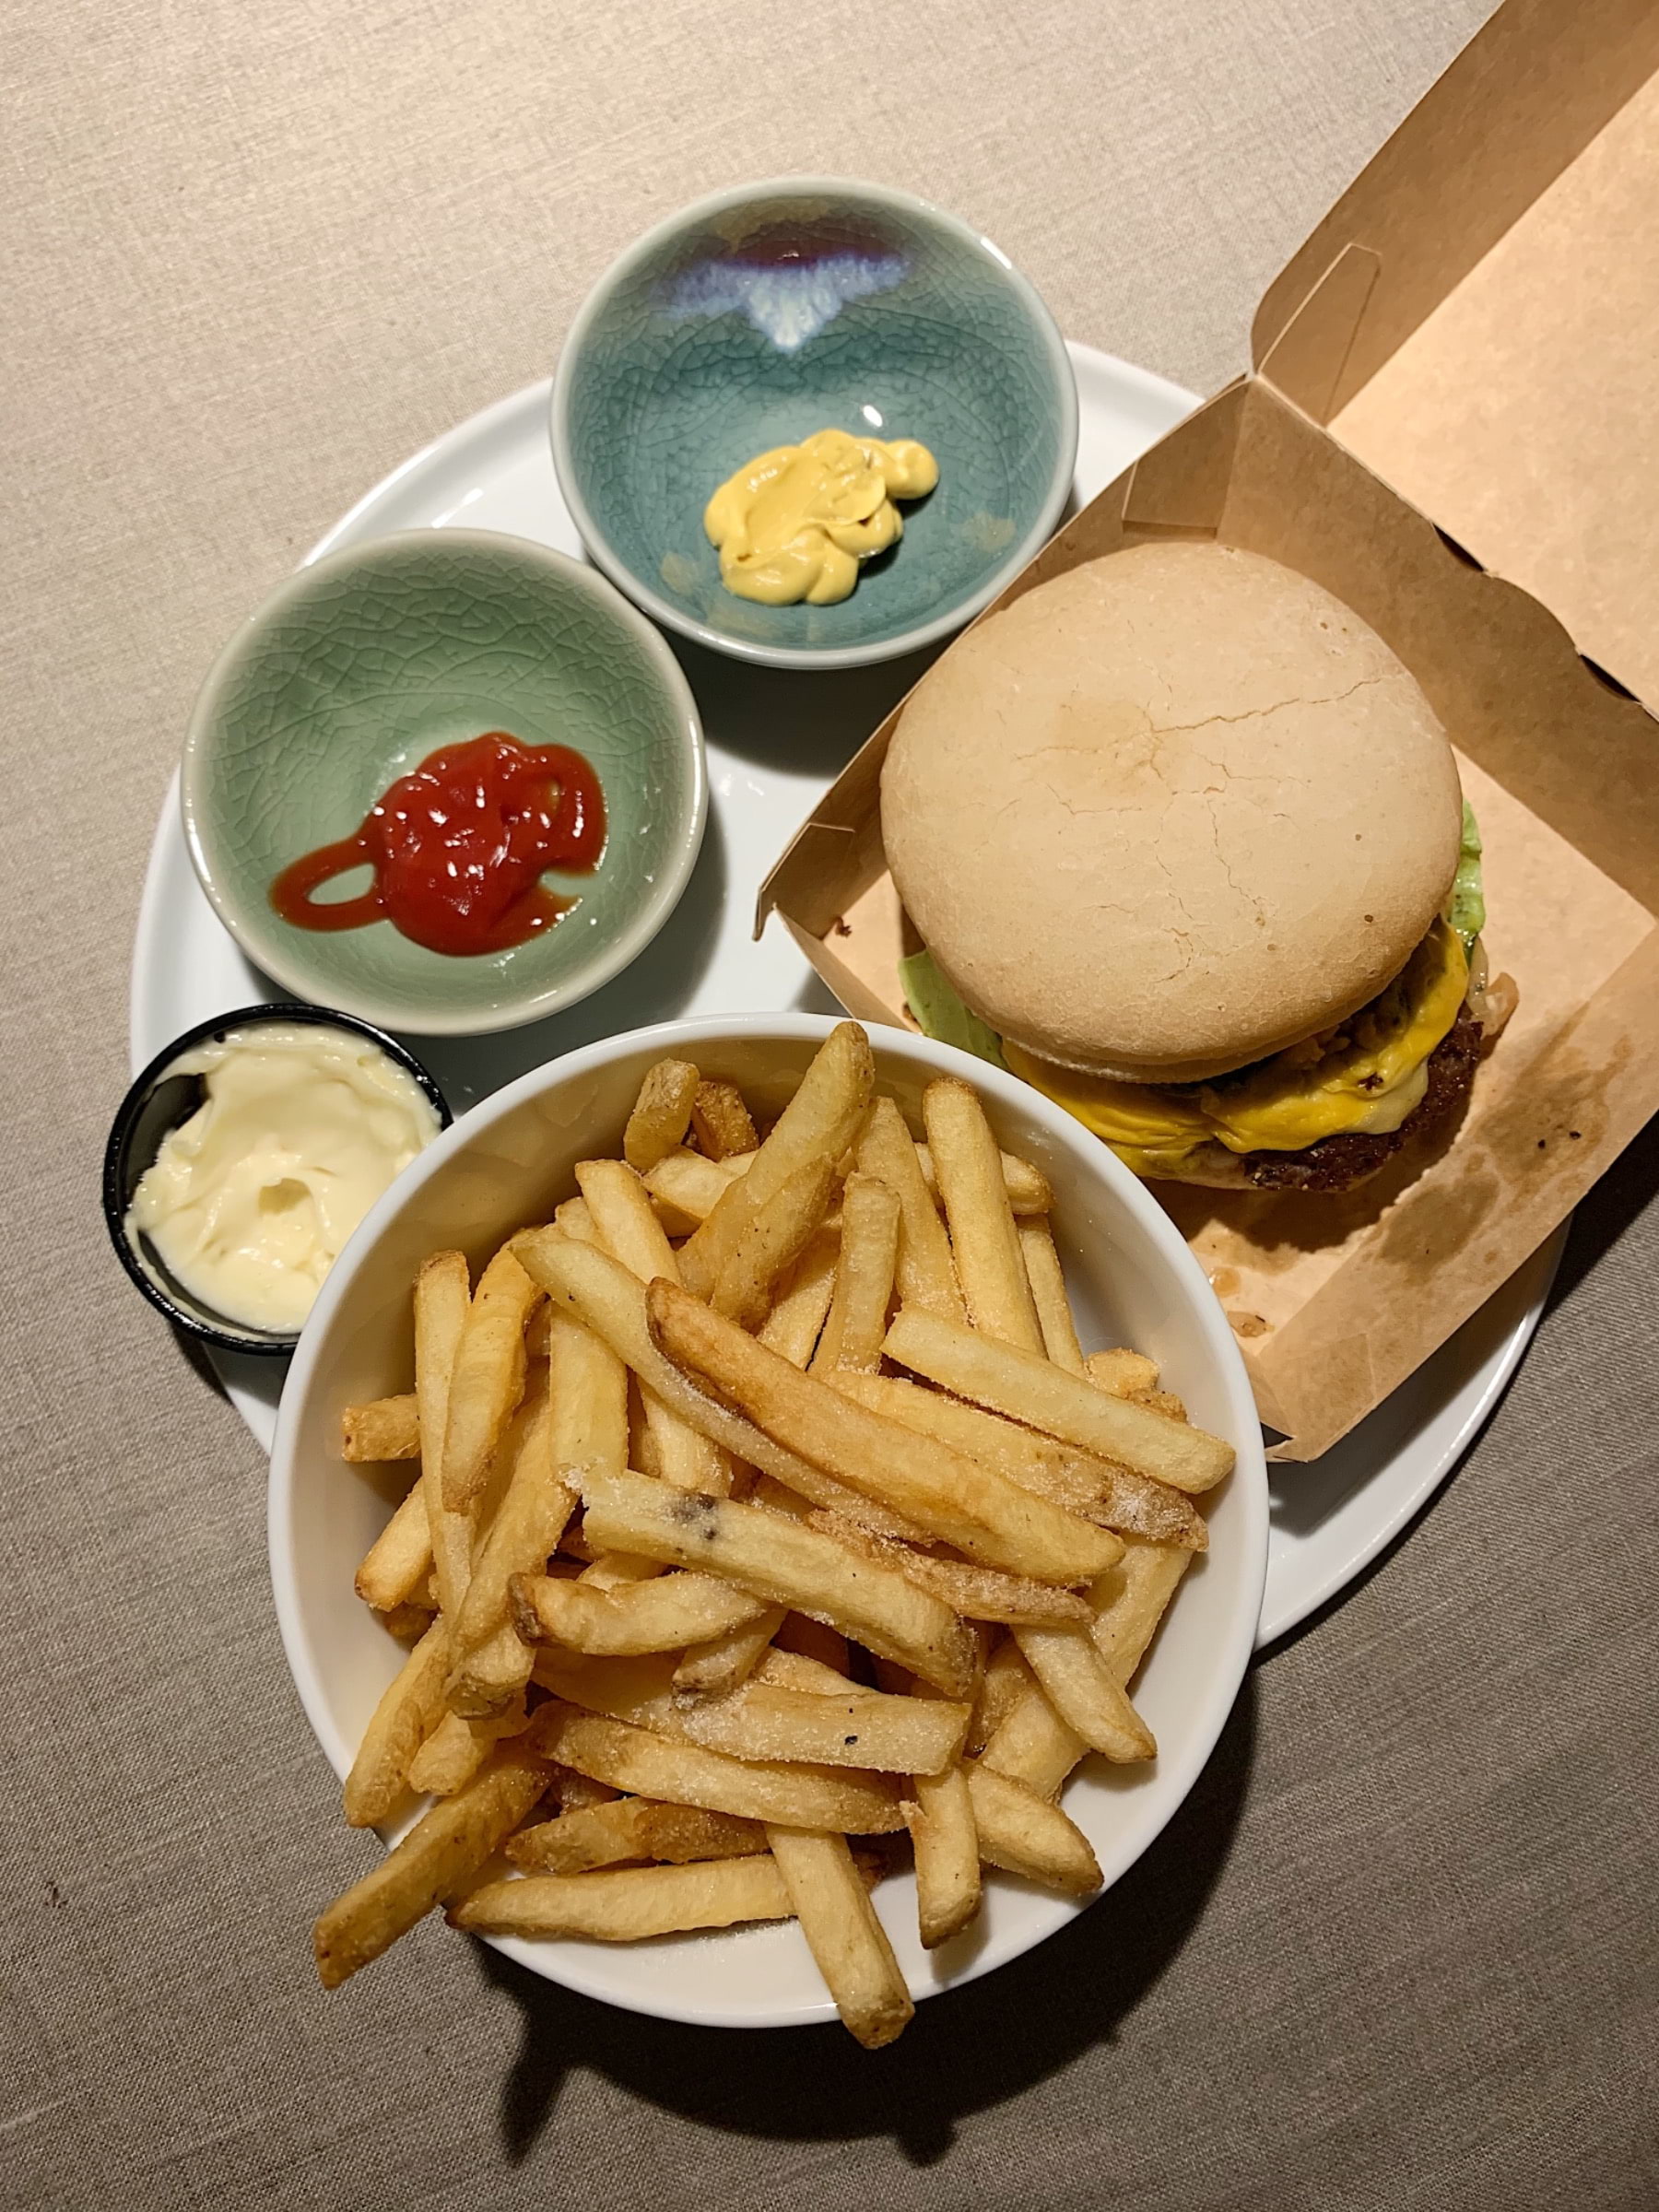 Hot Chili Jalapeno Cheeseburger med Original Fries och Majjo – Bild från Burgers & Beer Rörstrandsgatan av Caroline S.